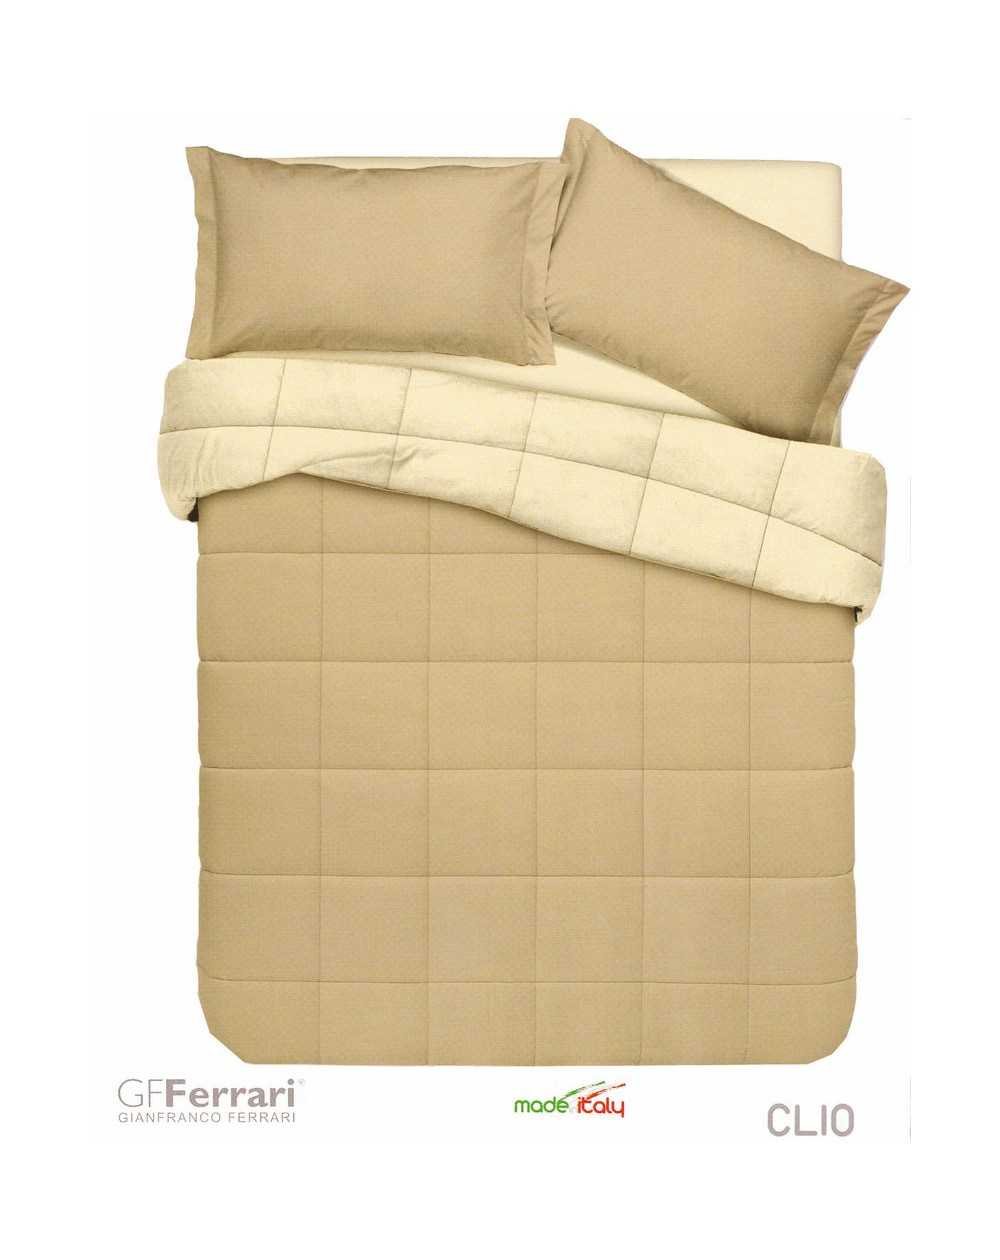 Comforter Clio GF Ferrari